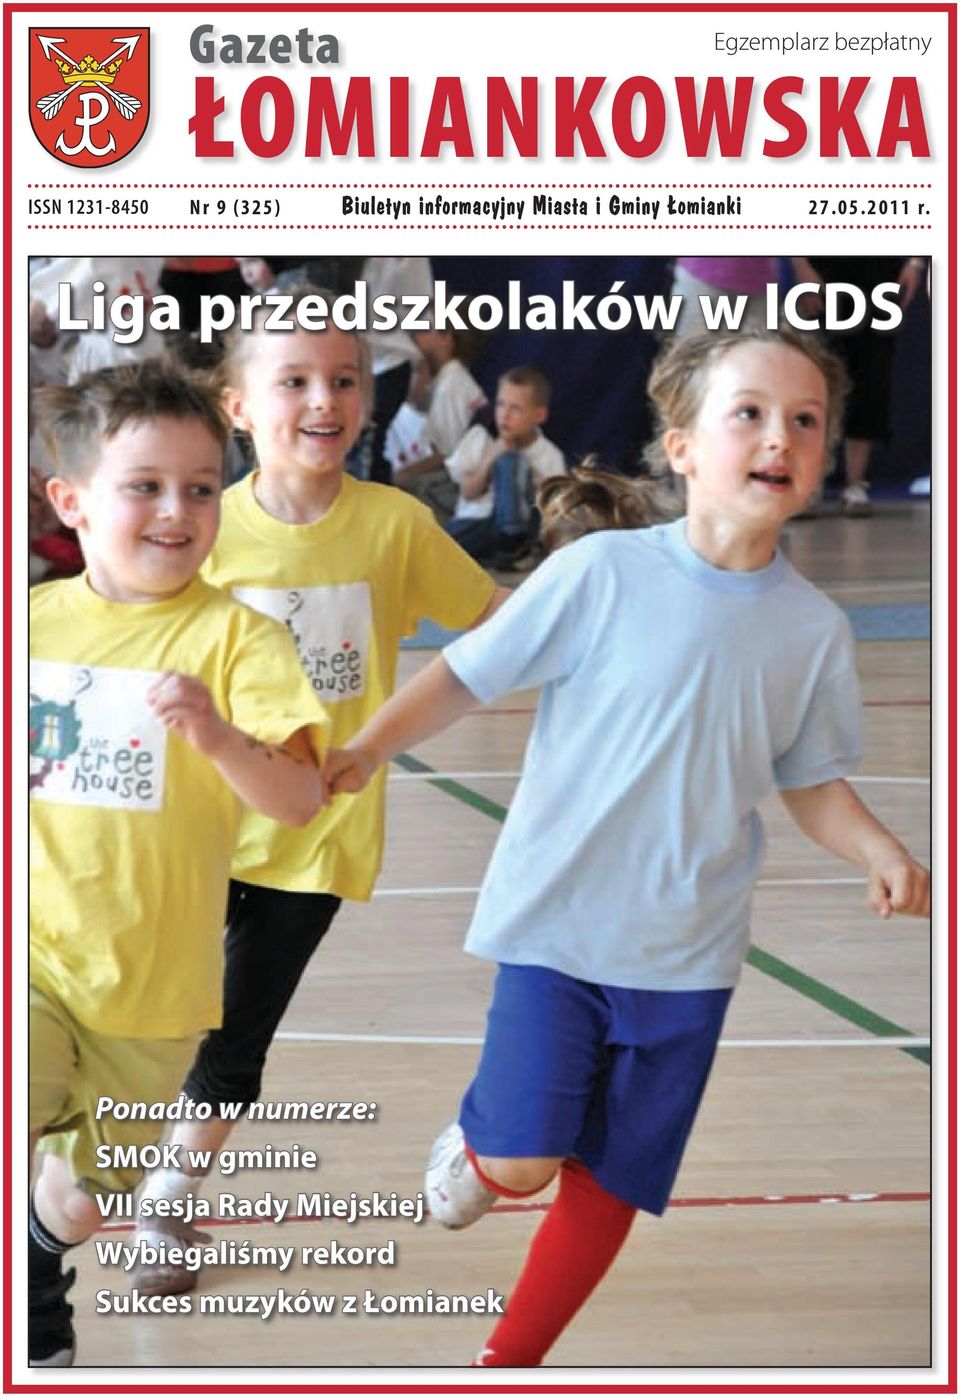 Liga przedszkolaków w ICDS Ponadto w numerze: SMOK w